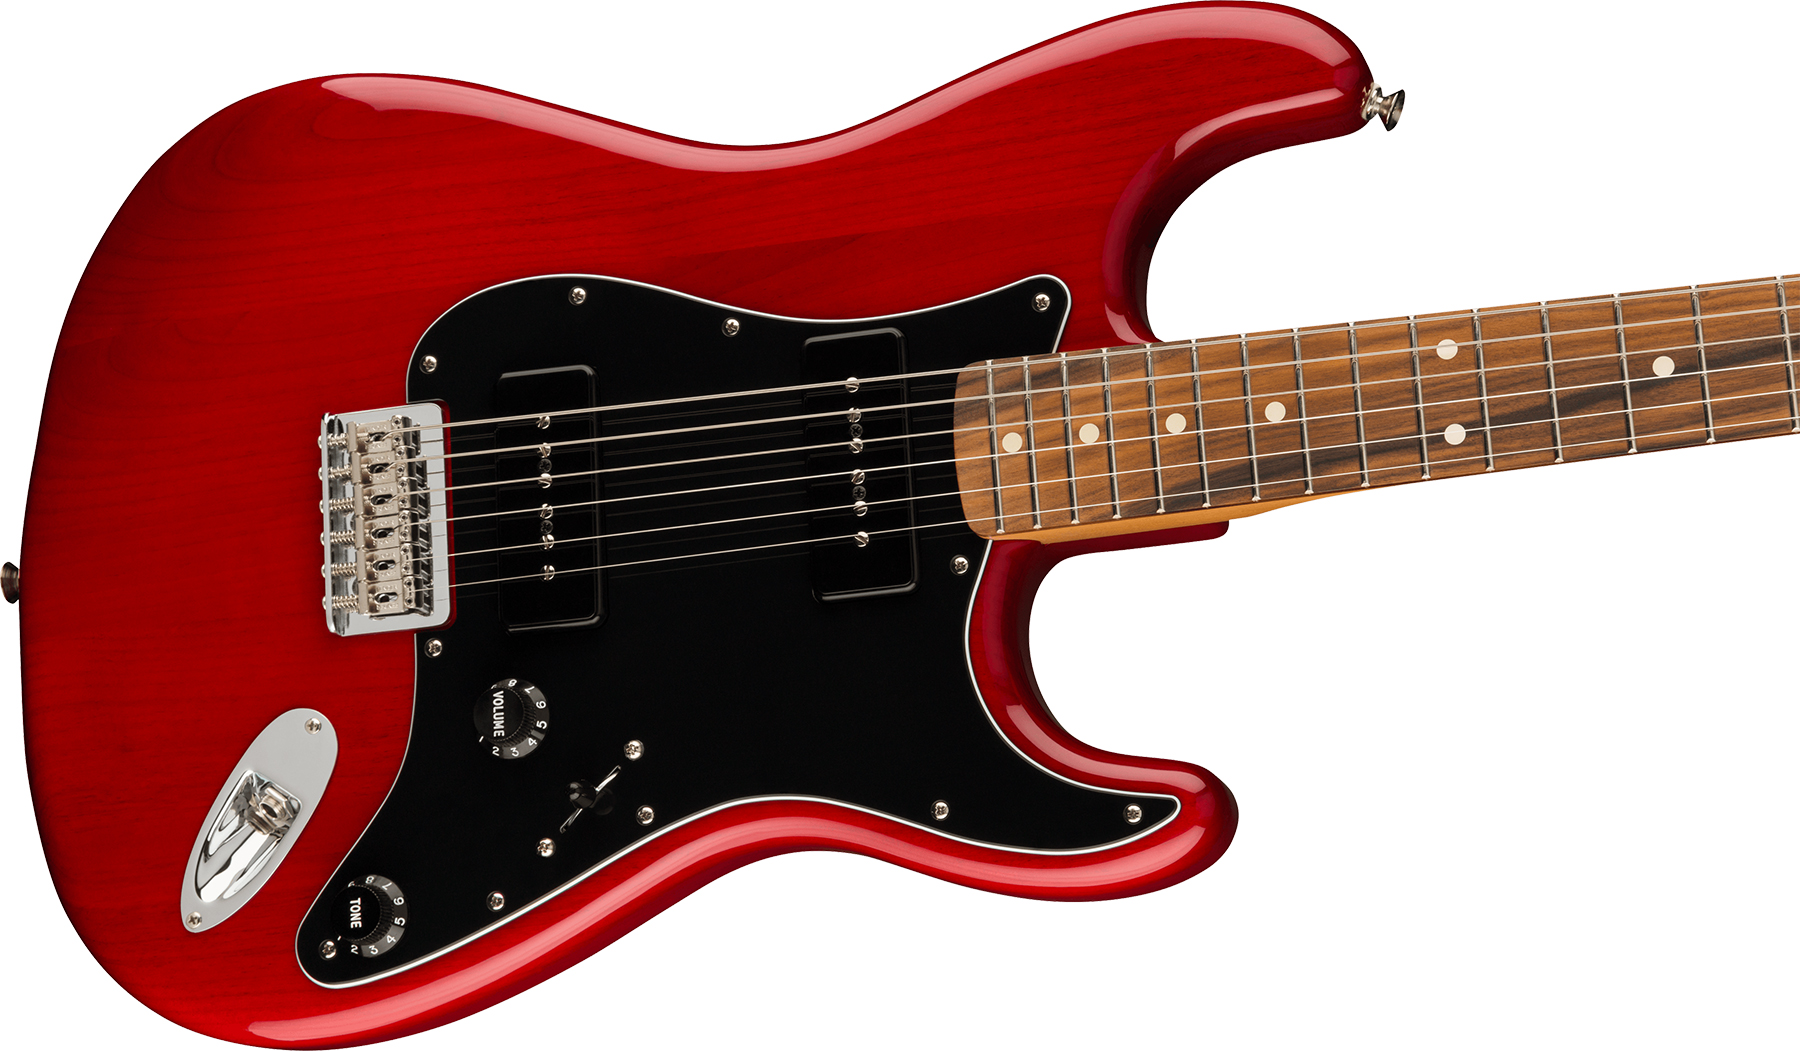 Fender Strat Noventa Mex Ss Ht Pf +housse - Crimson Red Transparent - Str shape electric guitar - Variation 2